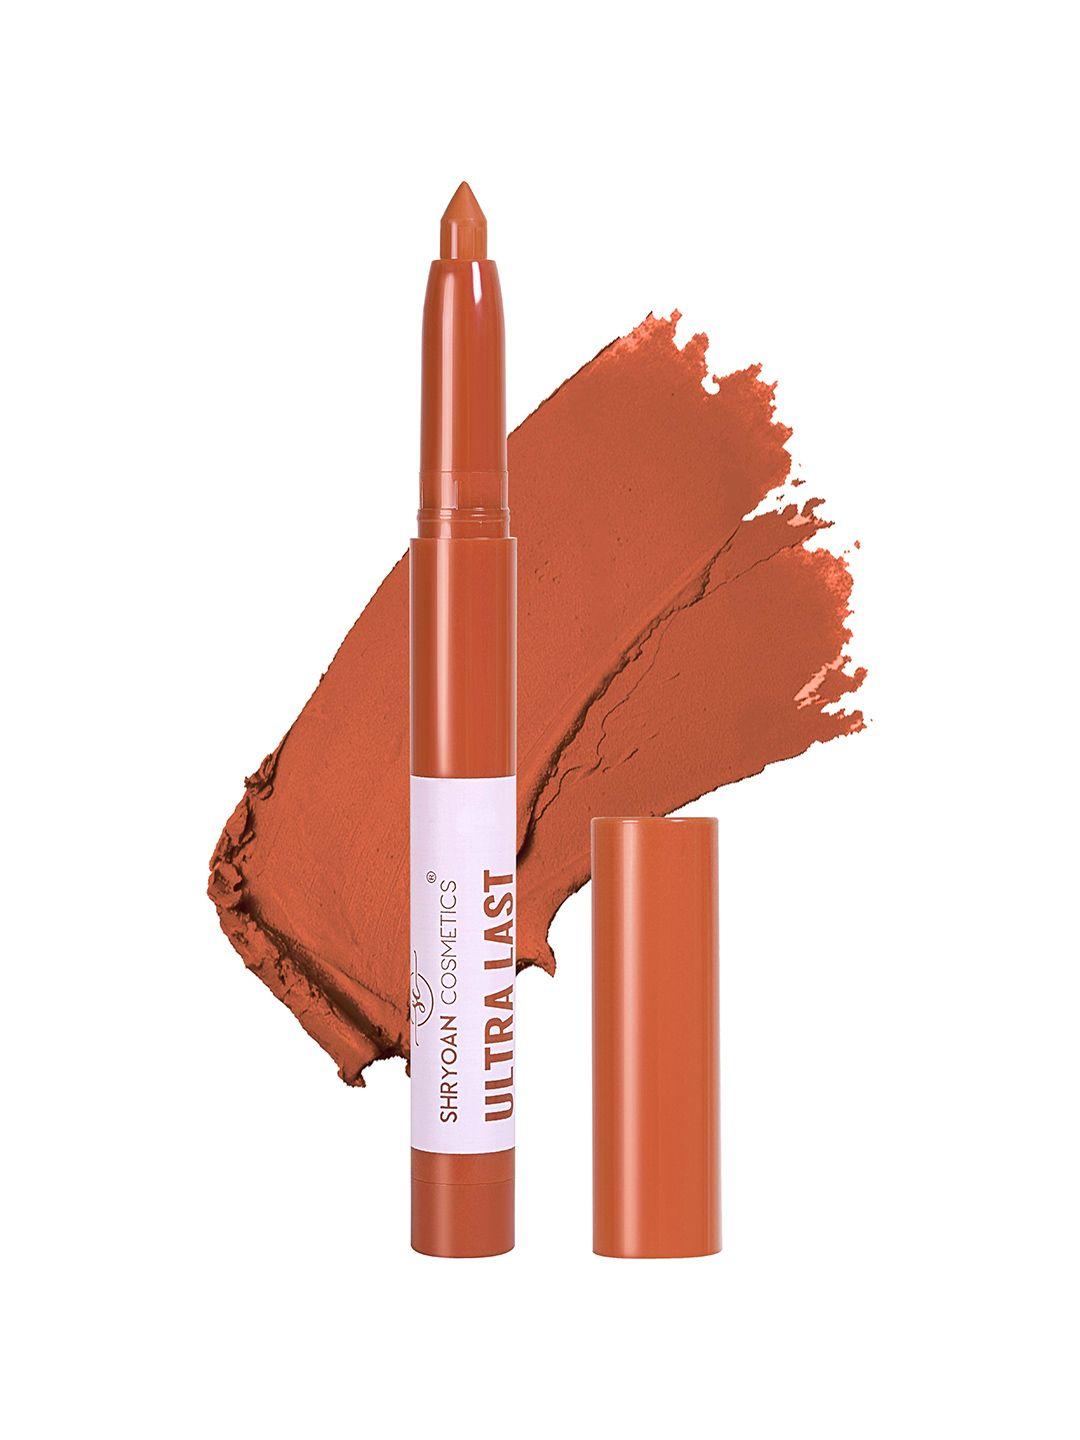 shryoan ultra last crayon matte lipstick - 3.5g - 15